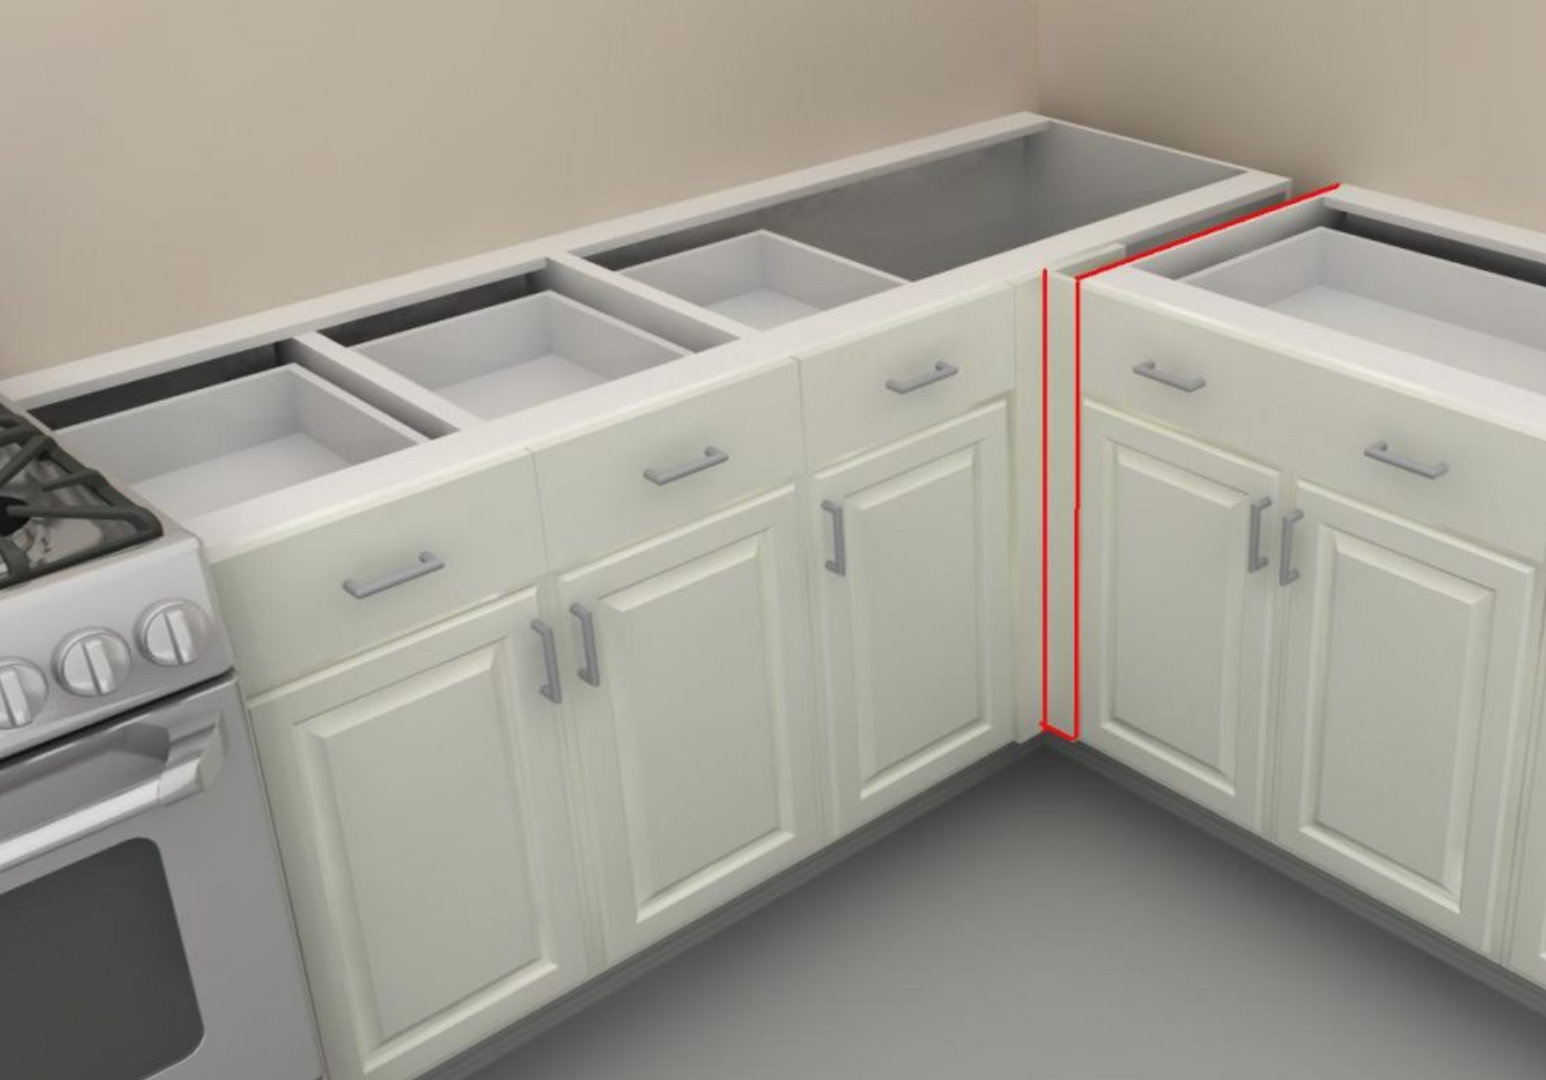 DIY kitchen remodel— options for kitchen corner storage… lazy susan, blind cabinet?